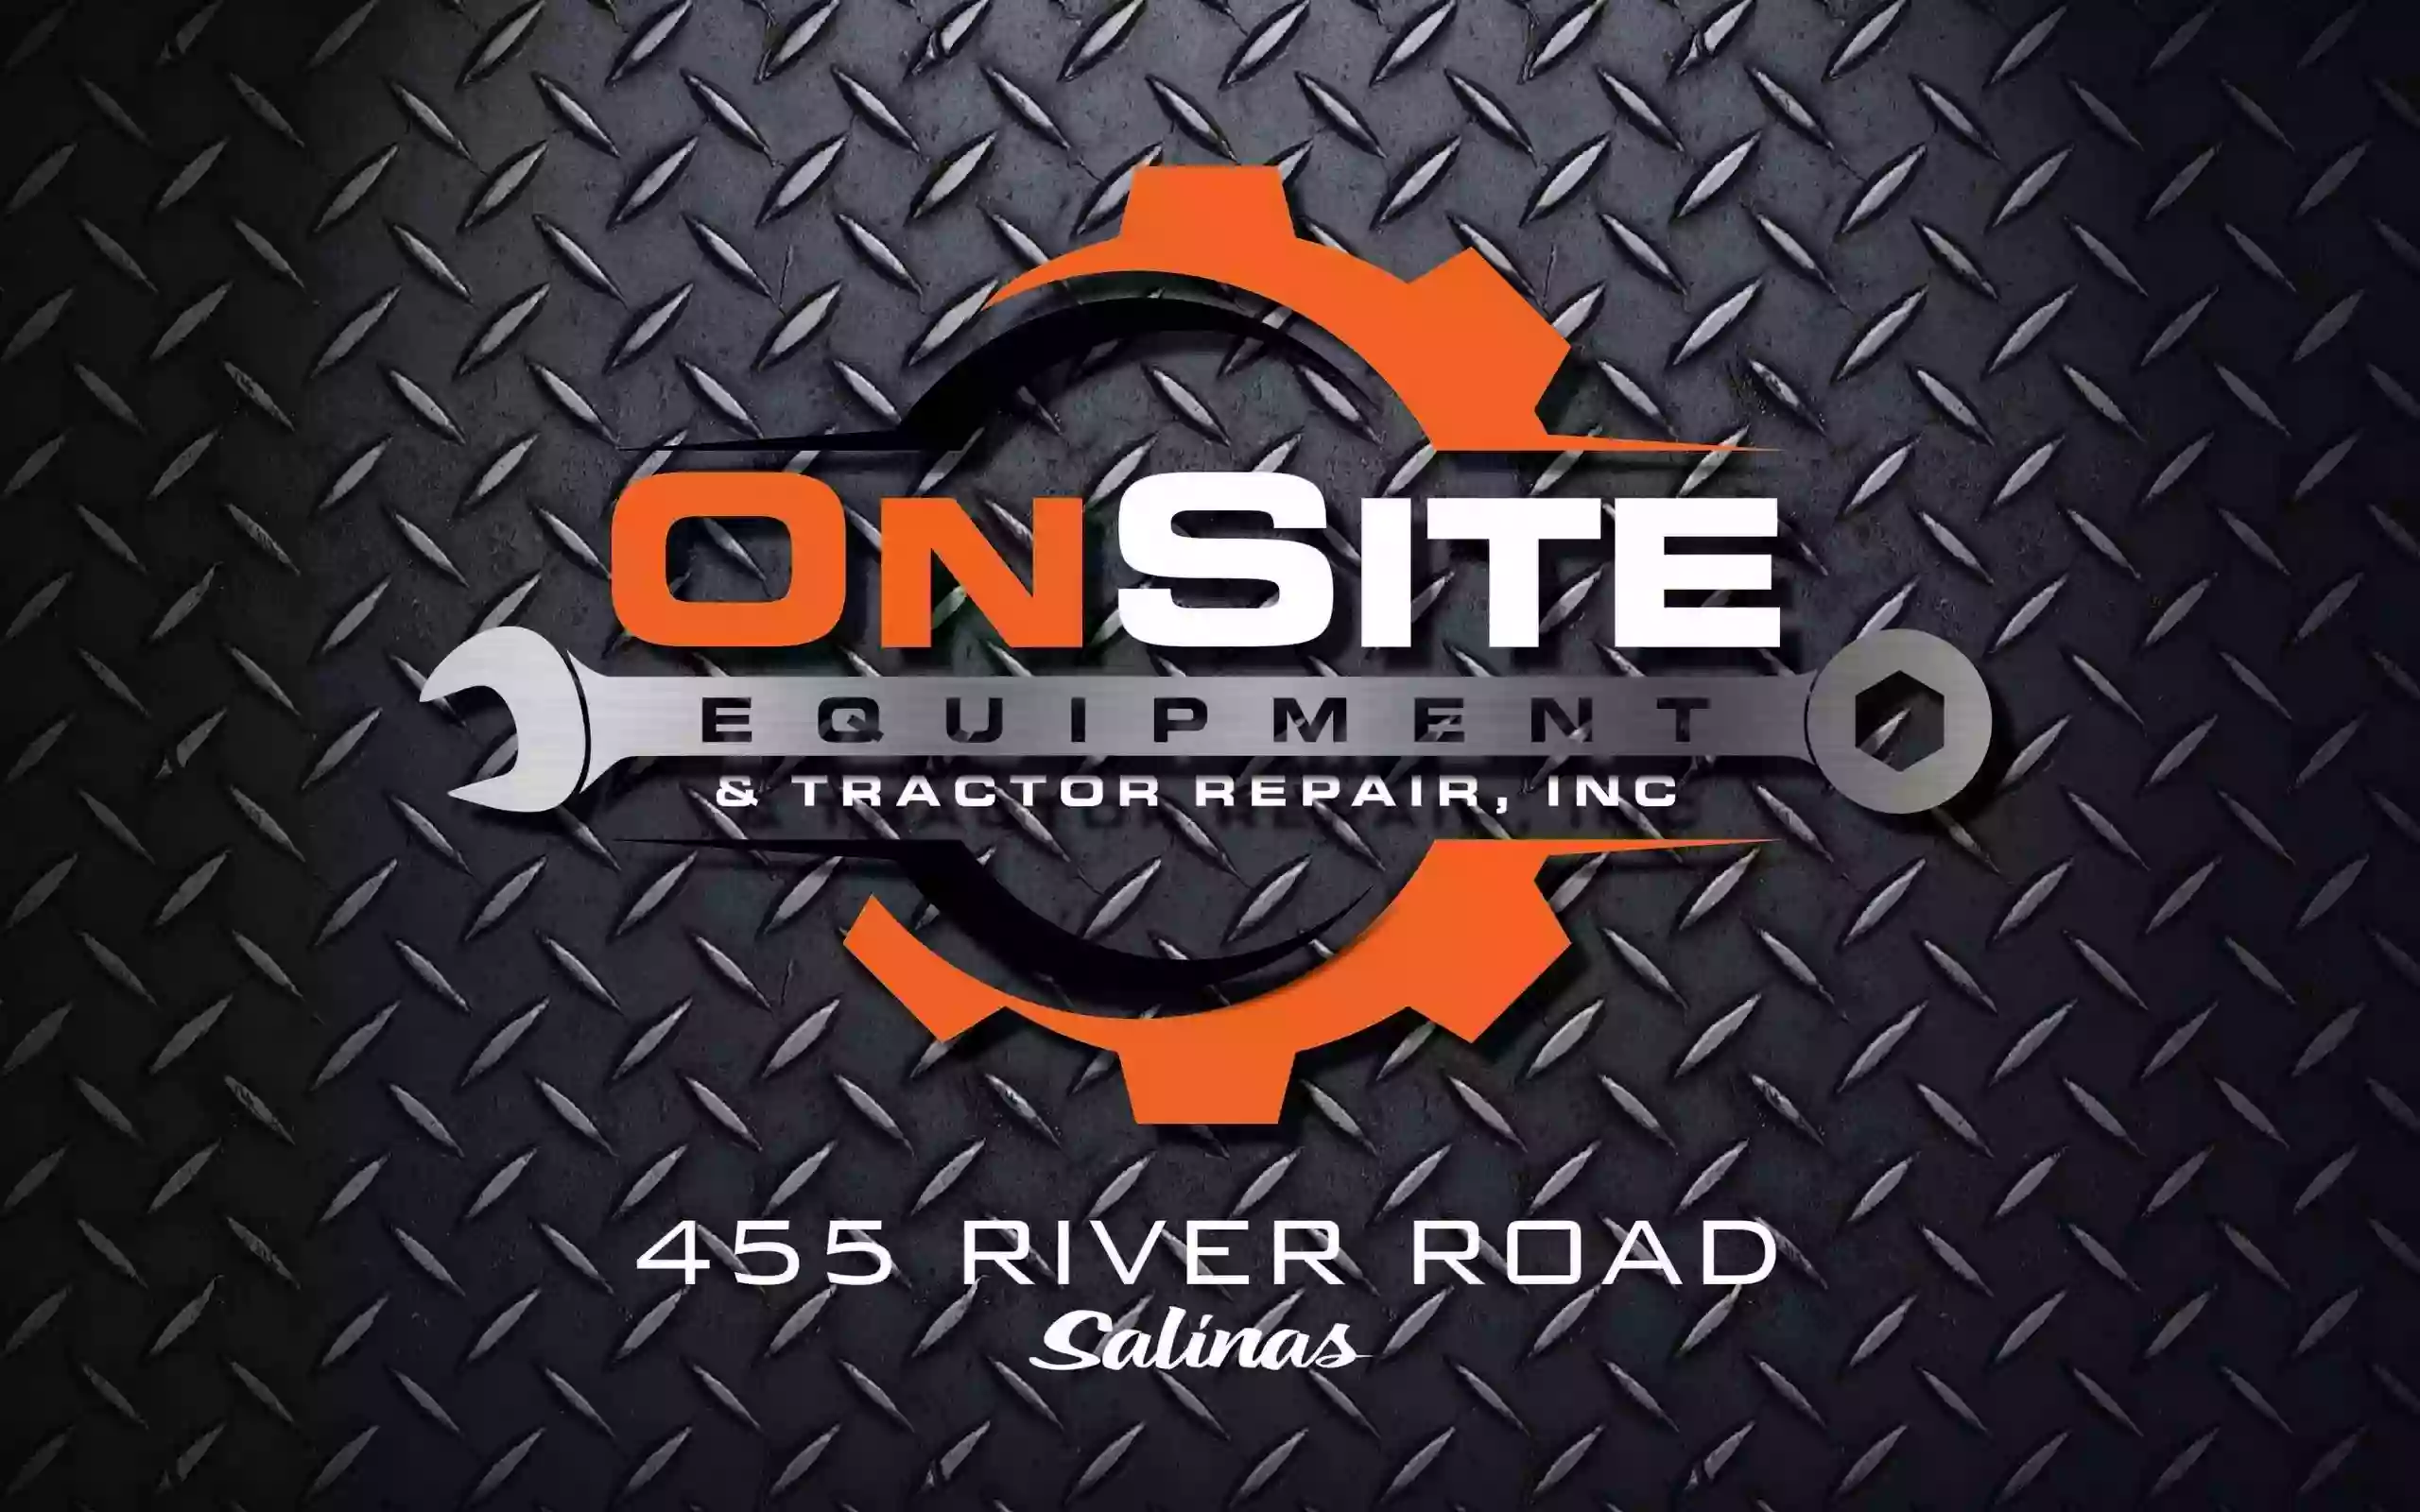 OnSite Equipment & Tractor Repair, Inc.